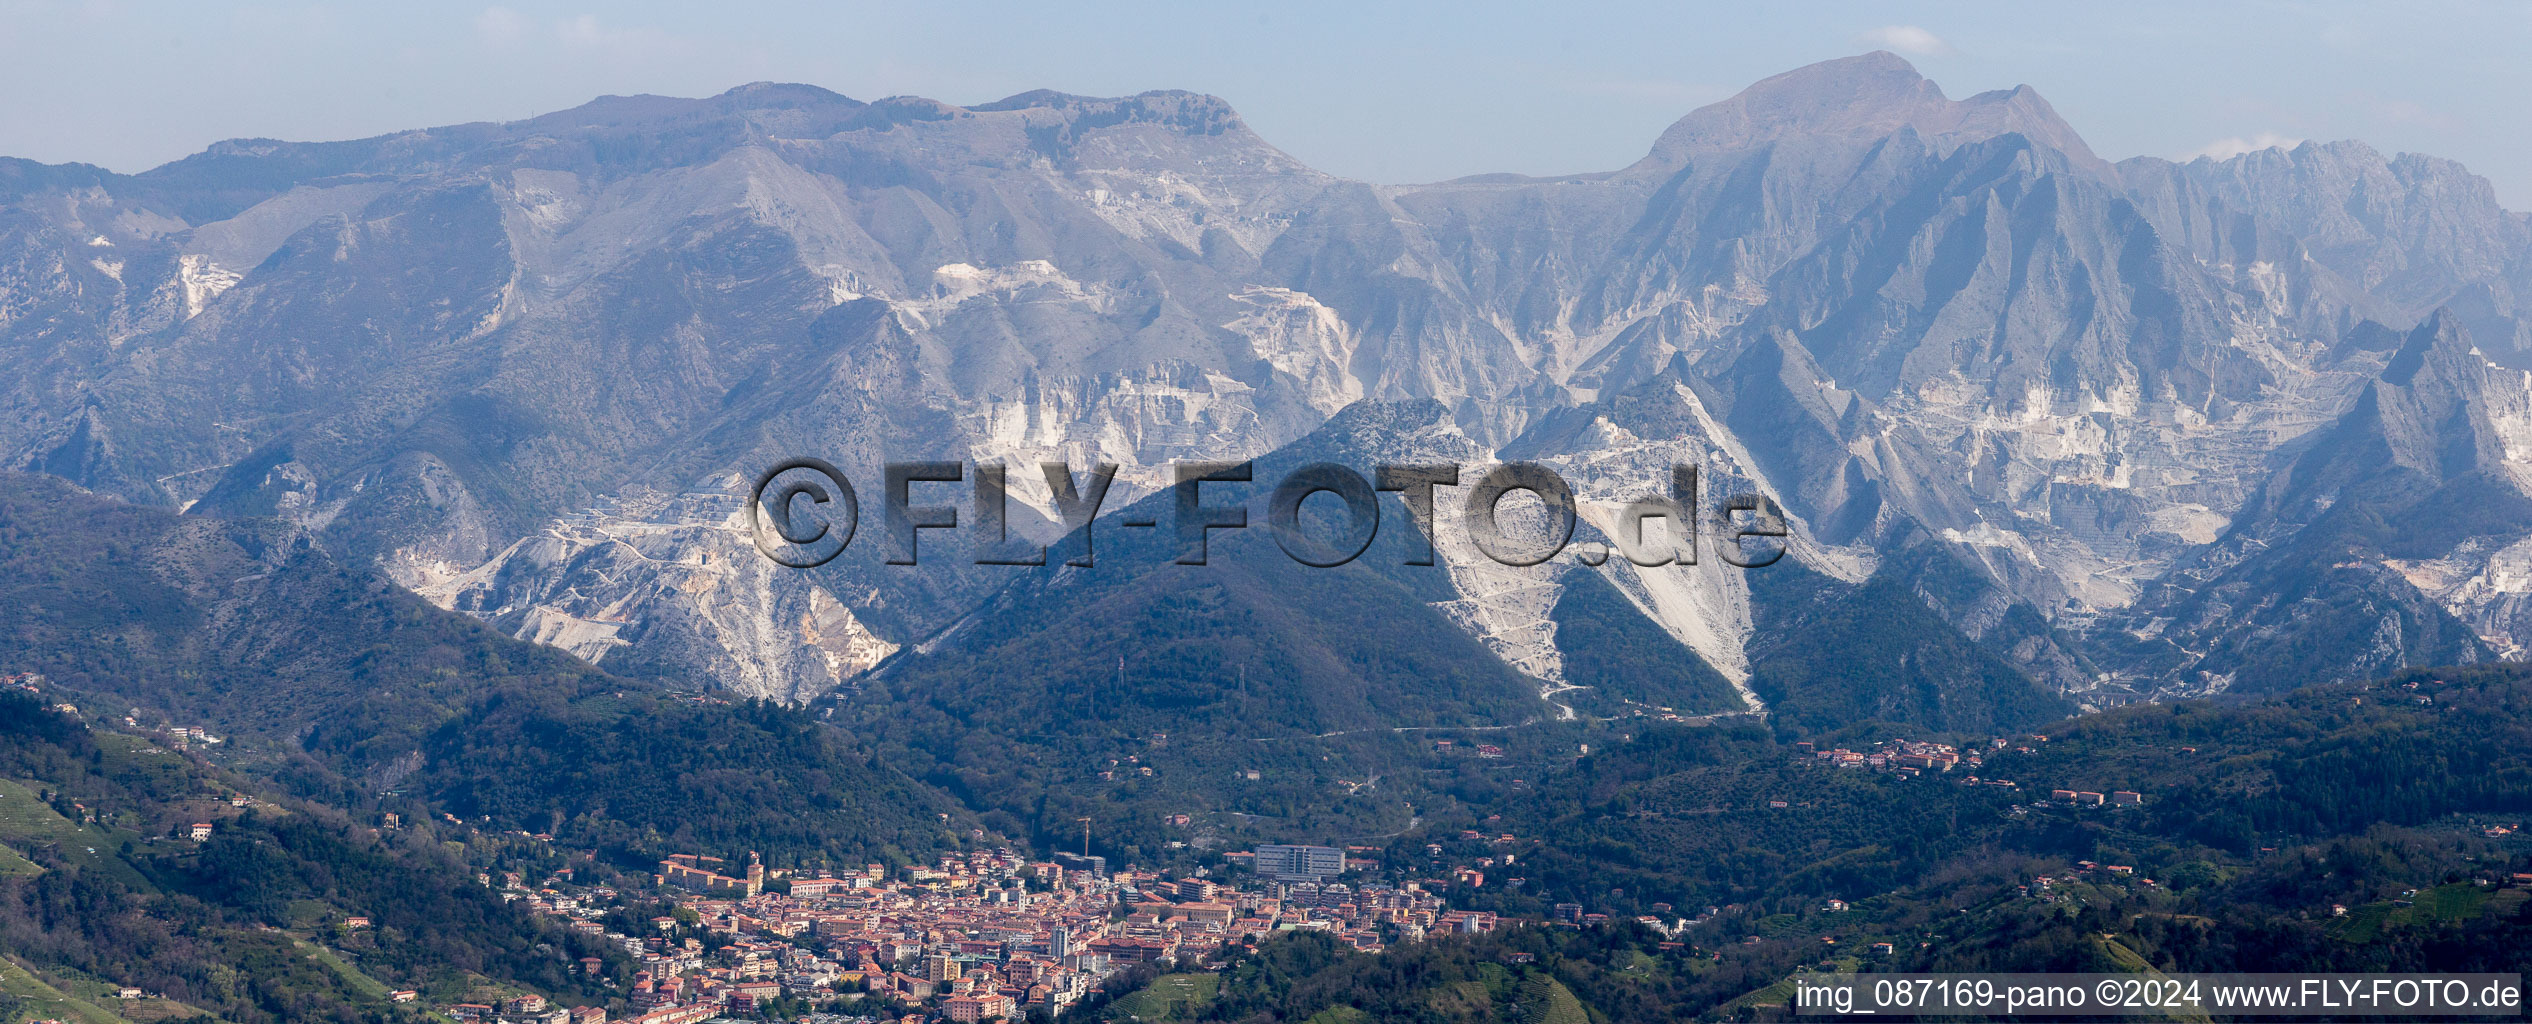 Panorama der Steinbrüche zum Abbau und zur Gewinnung von Marmor in Carrara in Toscana, Italien